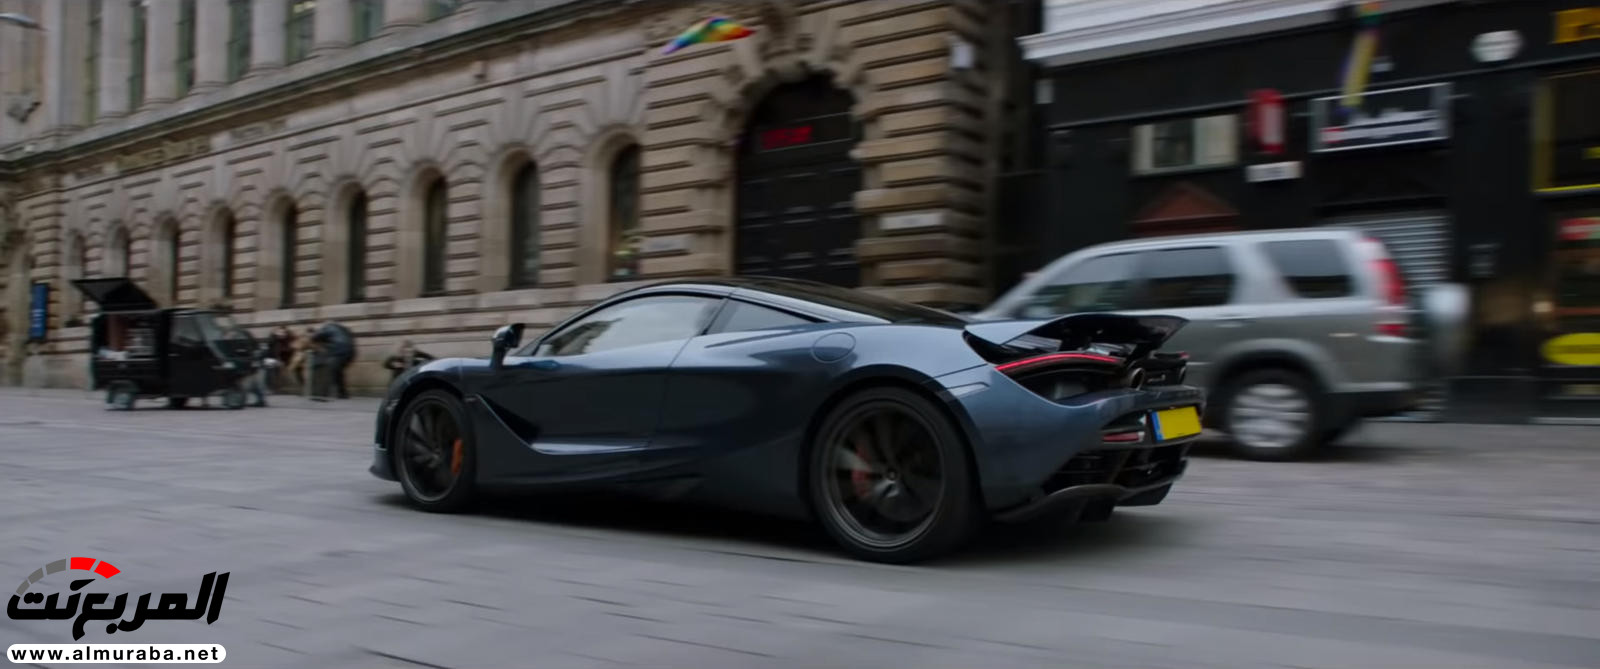 "بالفيديو والصور" لن تصدق مشاهد الأكشن مع السيارات في فيلم Fast & Furious: Hobbs & Shaw 27